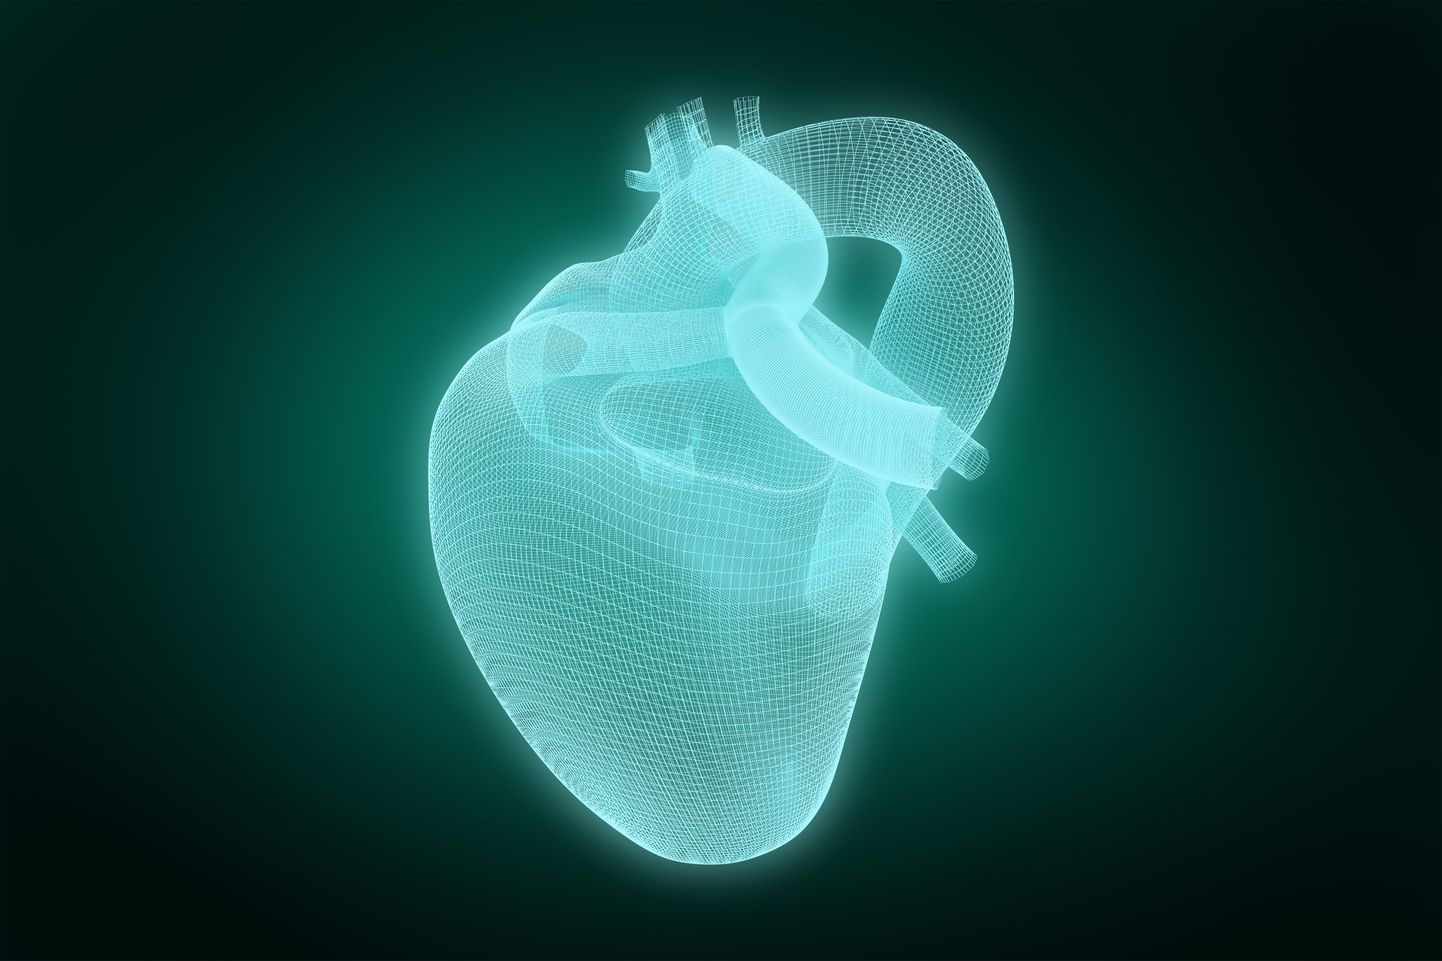 Модель искусственного сердца